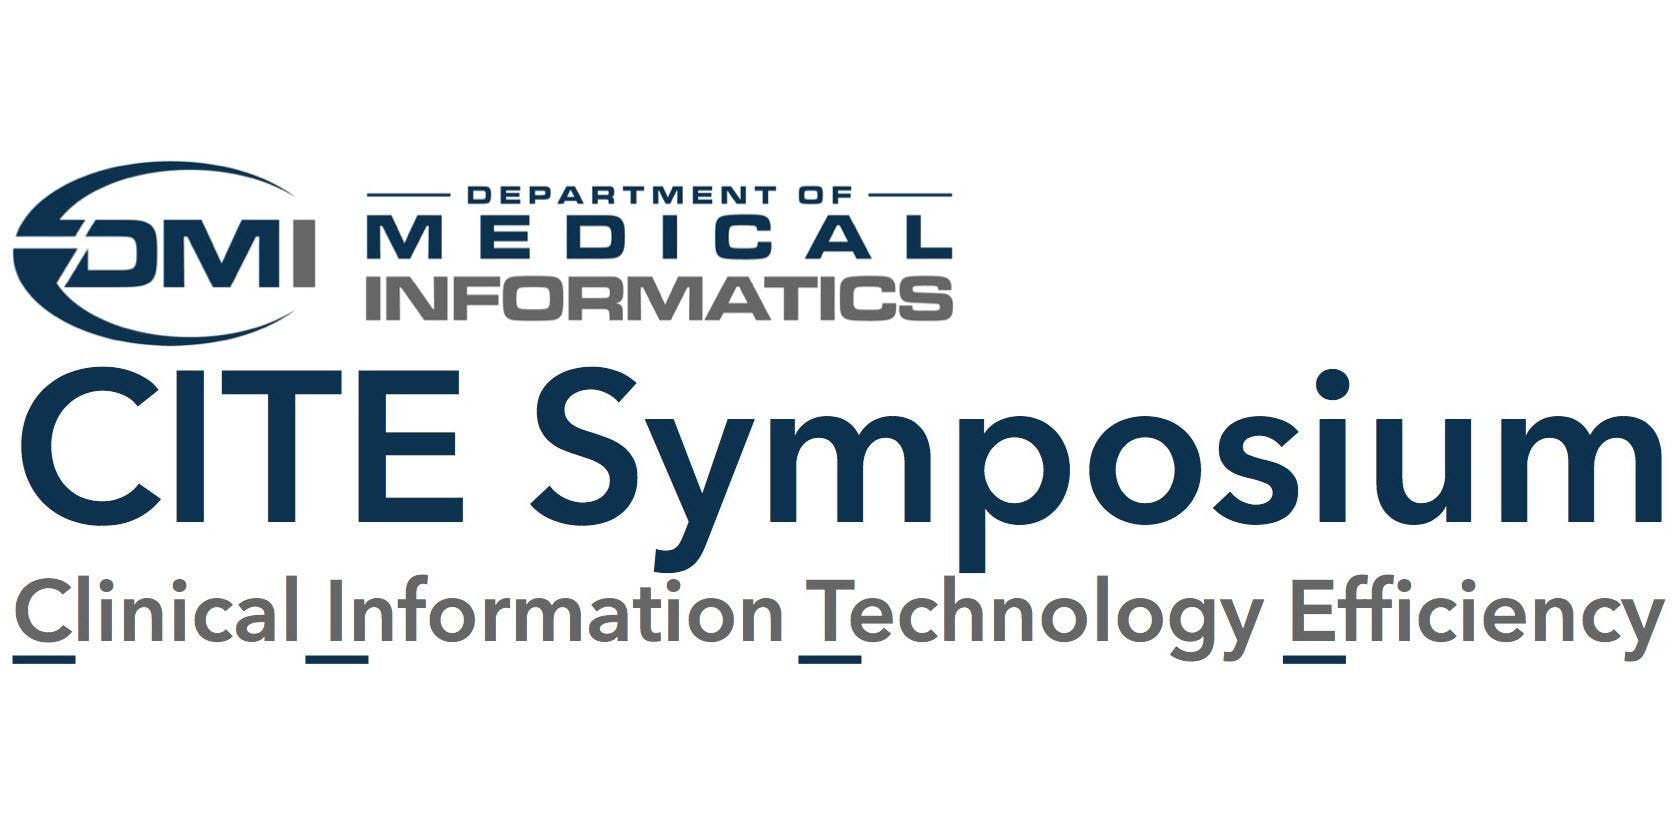 Local CITE Symposium - Documentation Day (August 21, 2019)